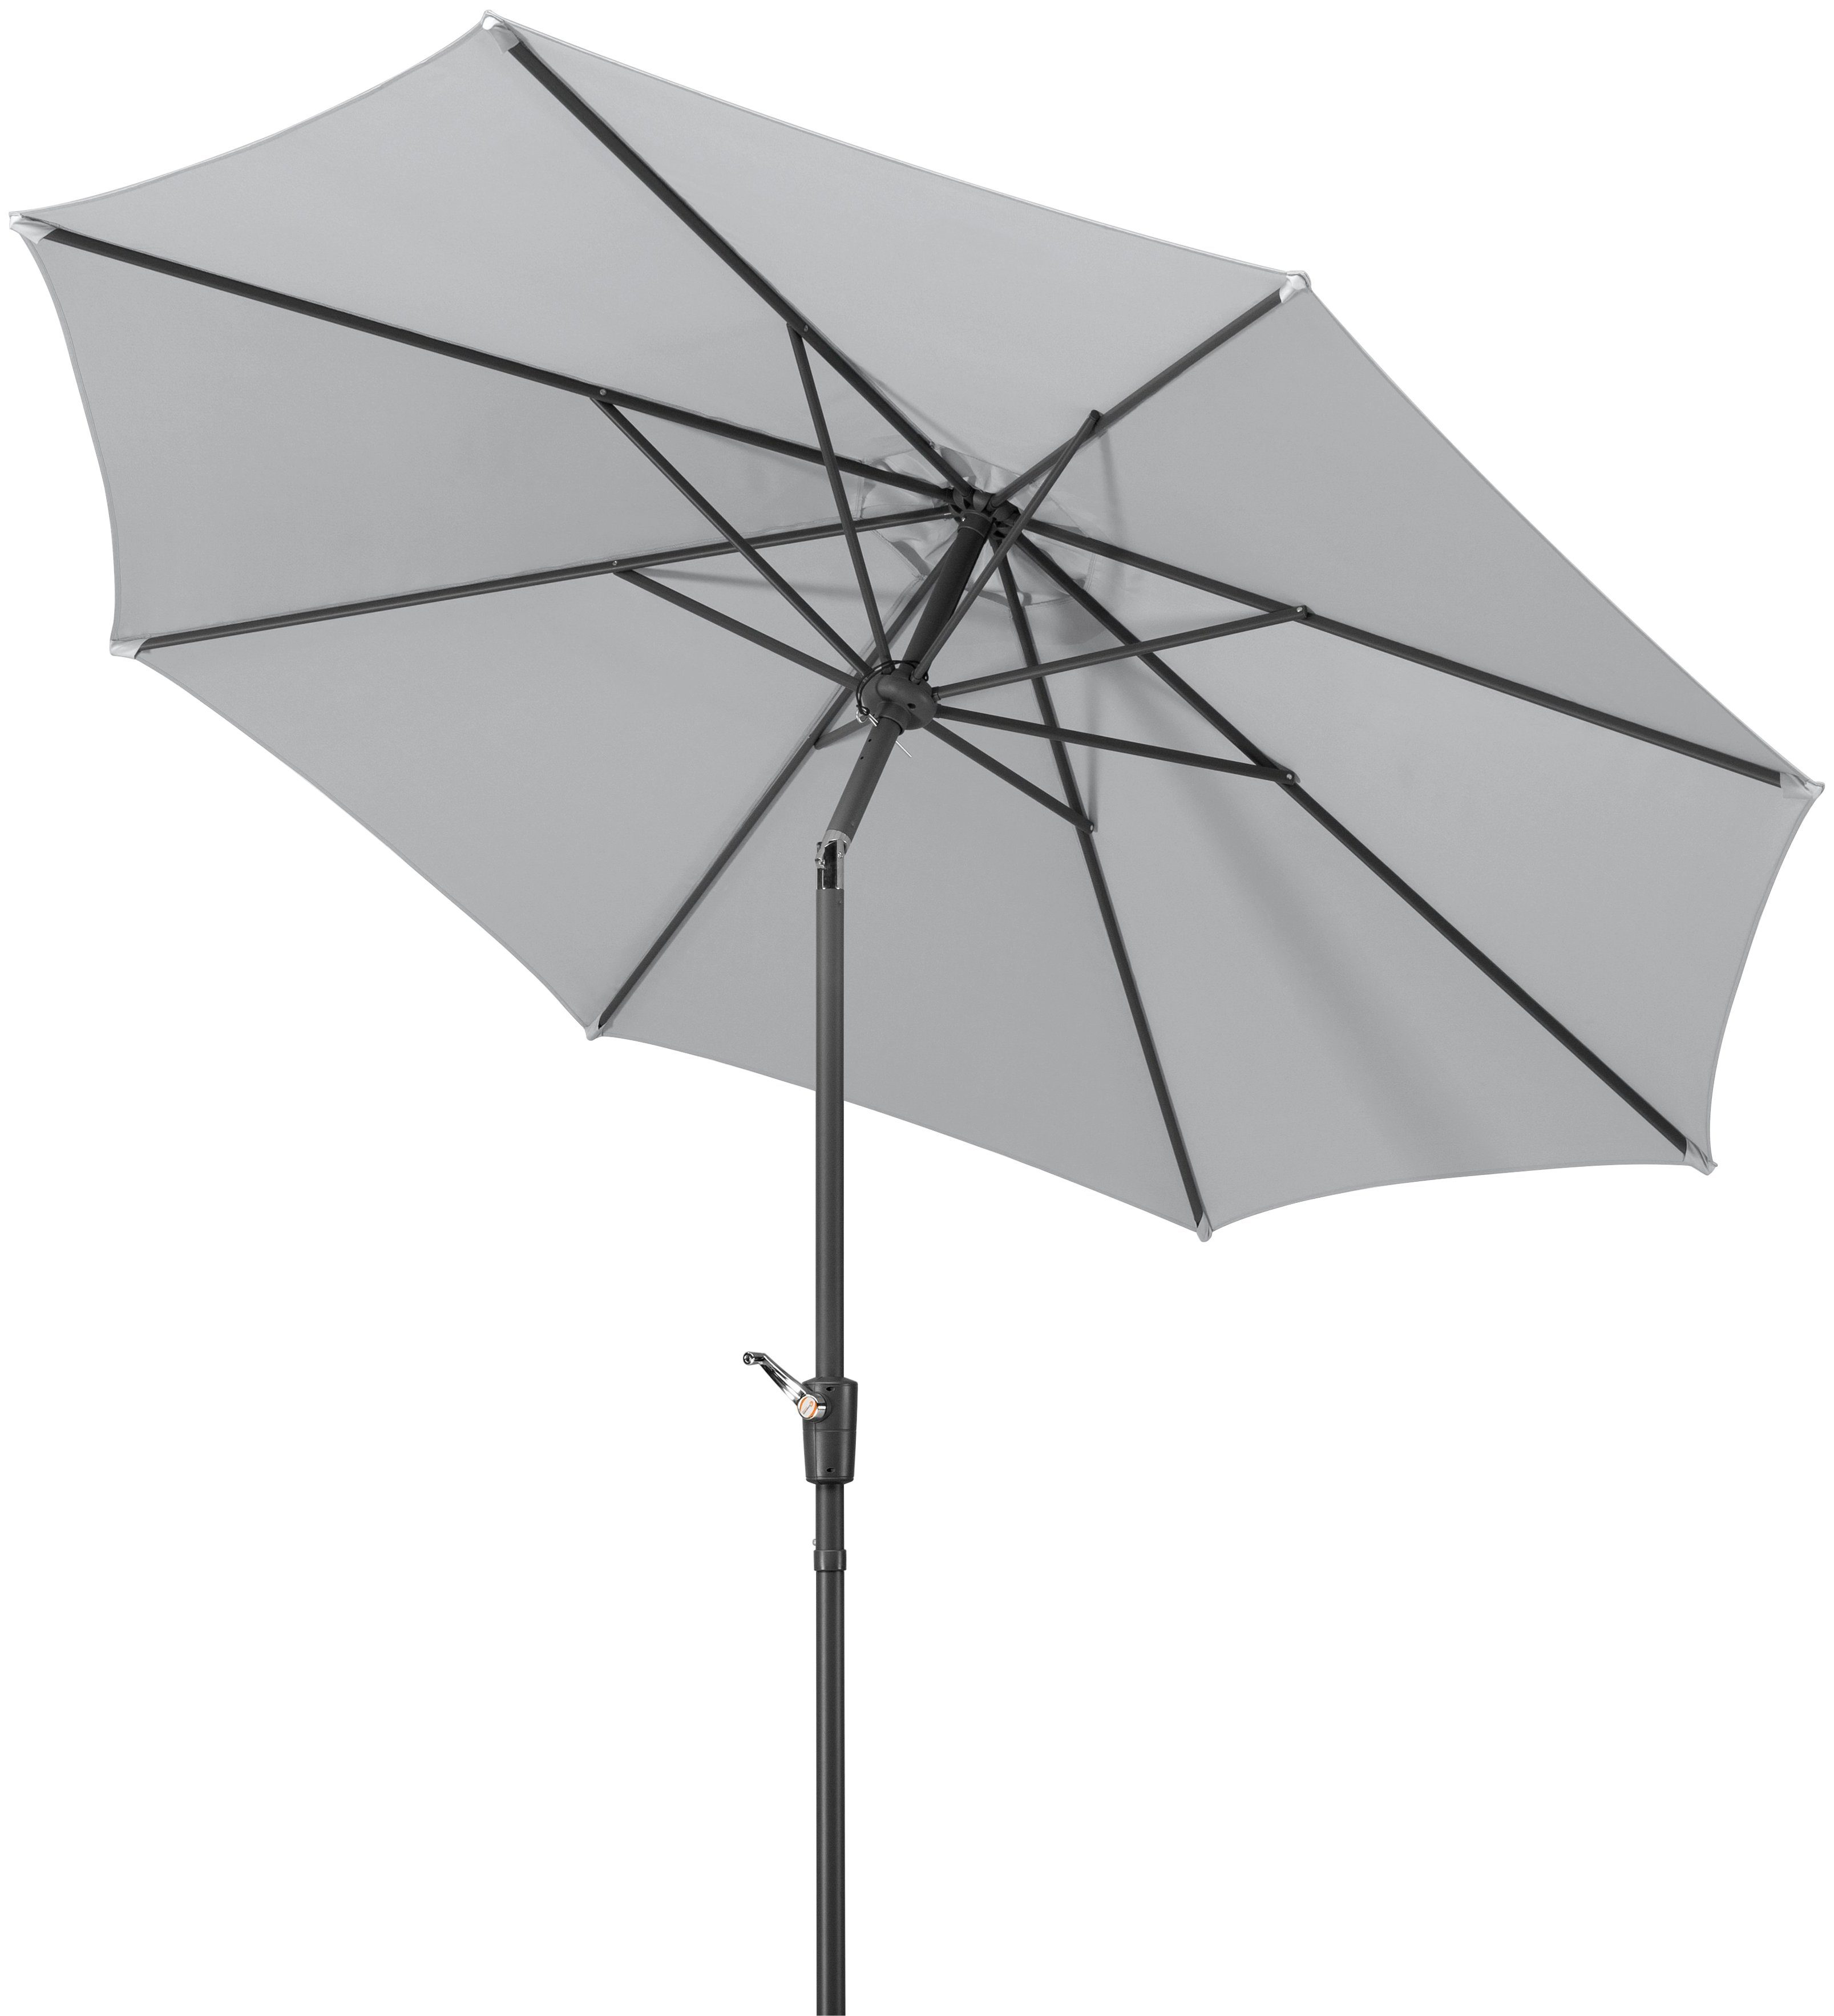 Schneider Schirme Marktschirm Harlem, Durchmesser 270 cm, silbergrau, rund, ohne Schirmständer